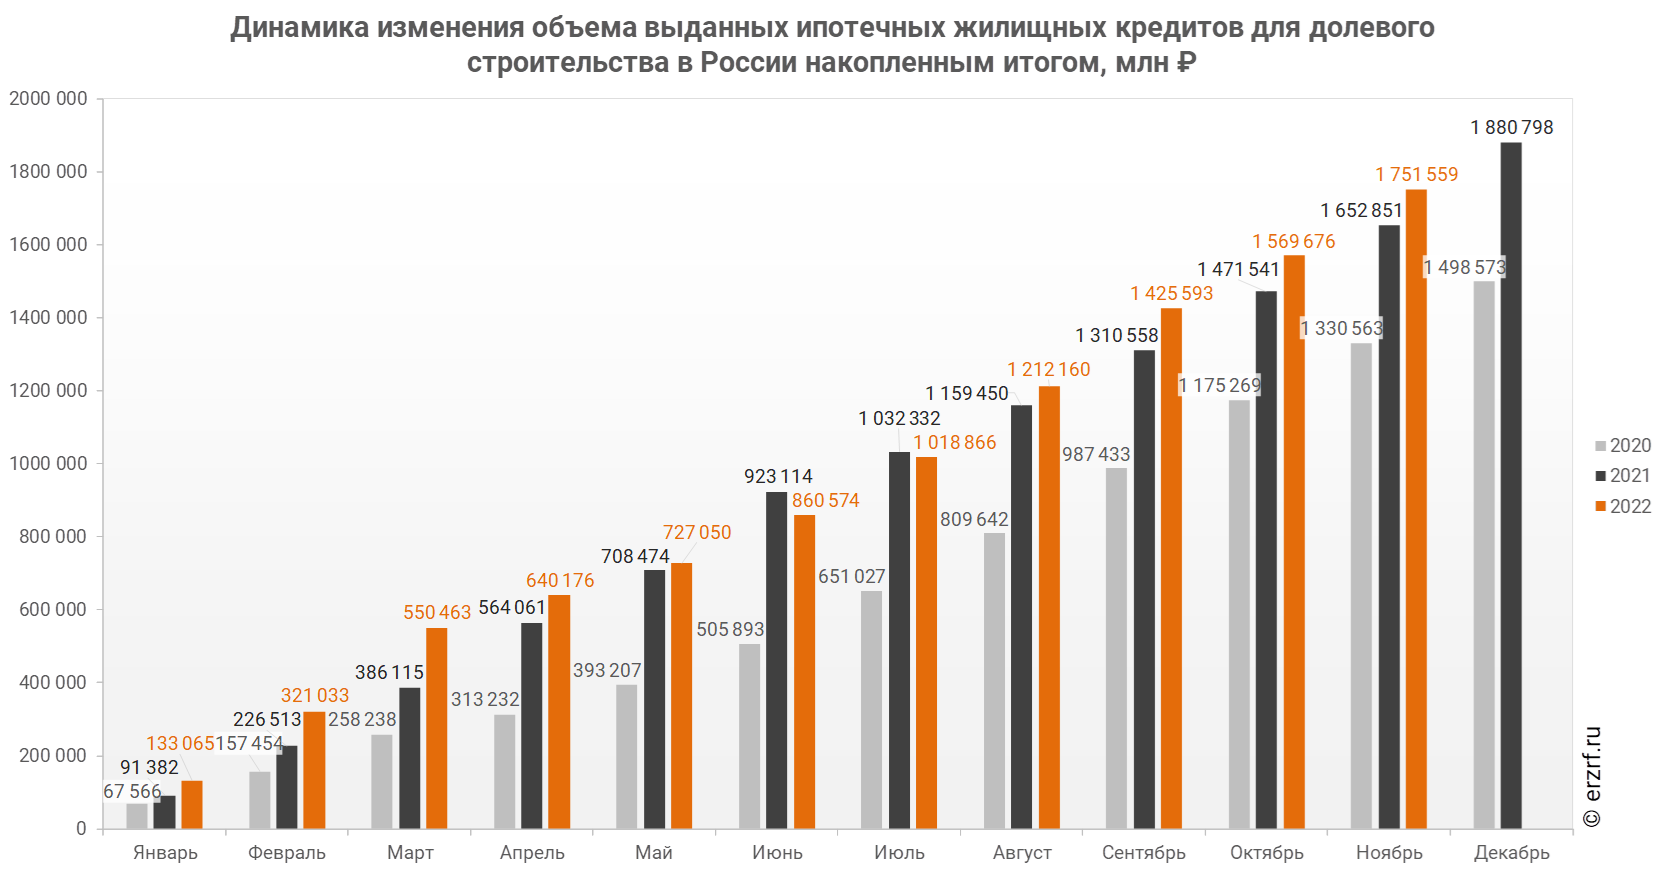 Динамика изменения объема выданных ипотечных жилищных кредитов для долевого строительства в России накопленным итогом, млн ₽